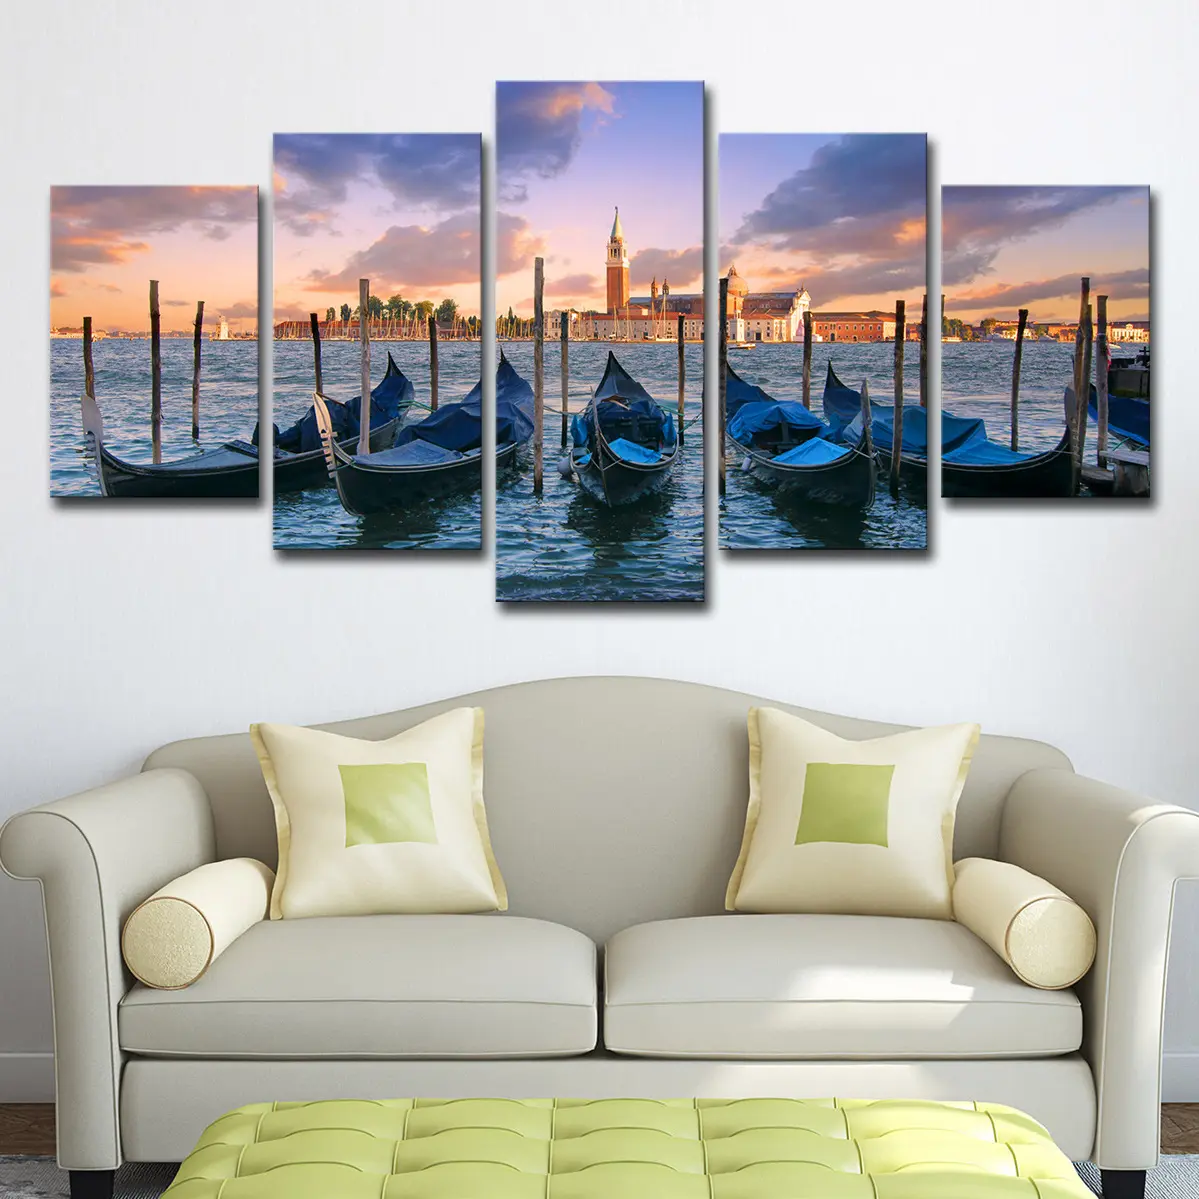 5 pannelli blu barca vista mare Poster immagine città mare mare mare paesaggio paesaggio moderno tela stampata arte per la decorazione della sala da pranzo